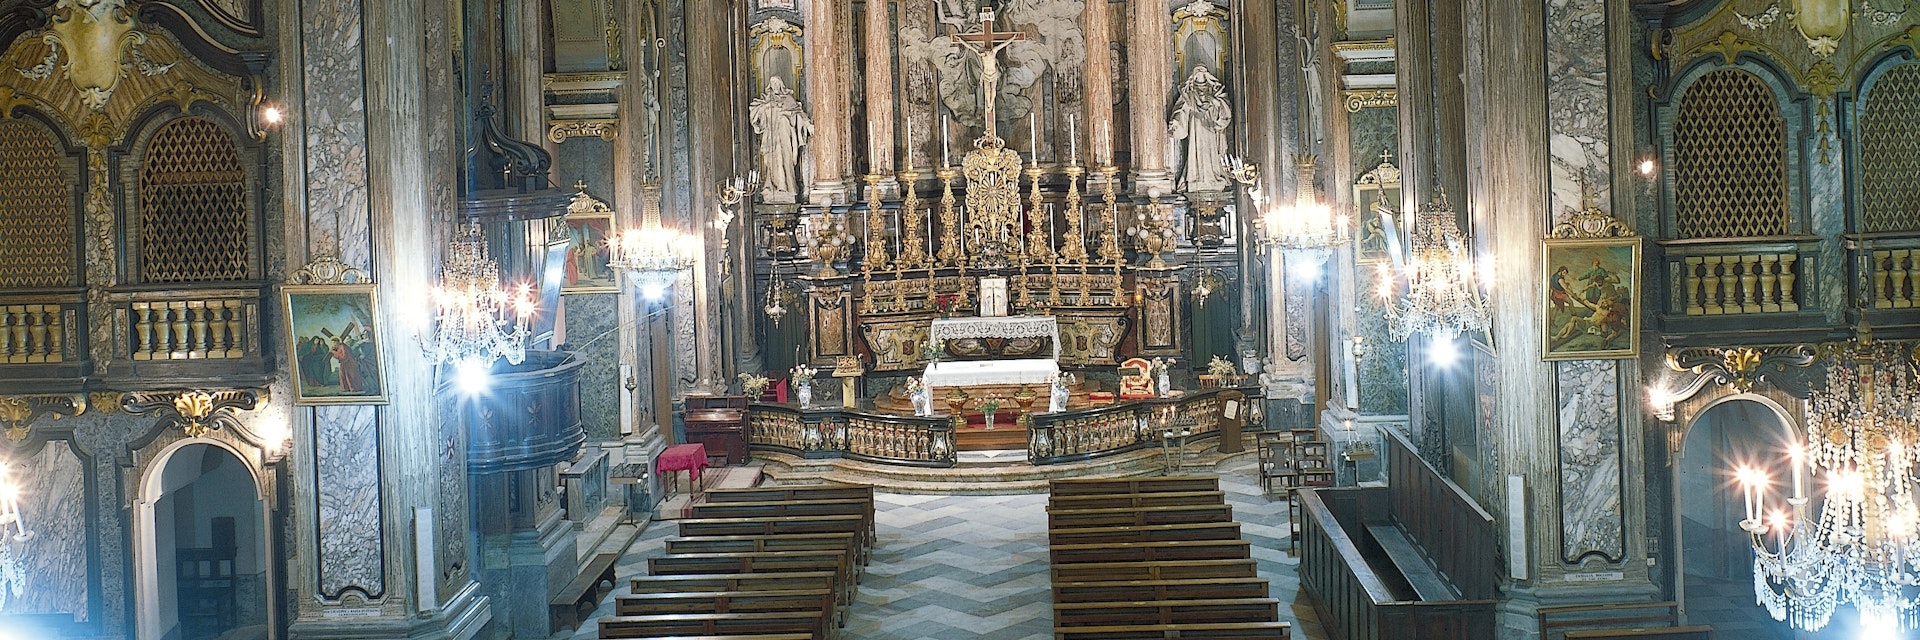 Interior church of Sant' Andrea, Bra, Italy, 17th century